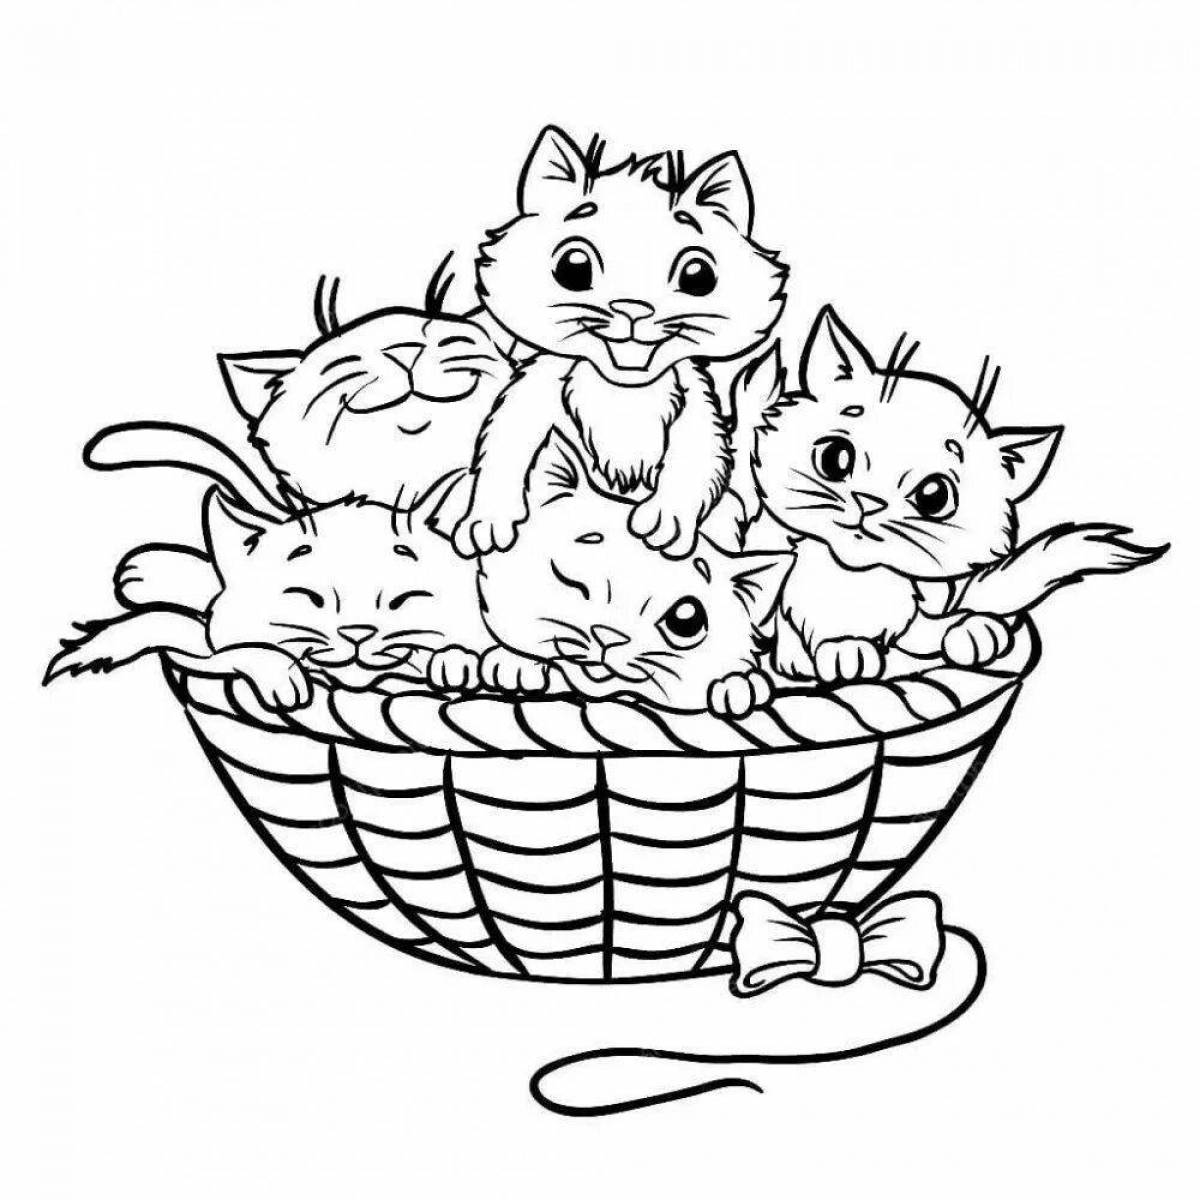 Kittens in a basket #11